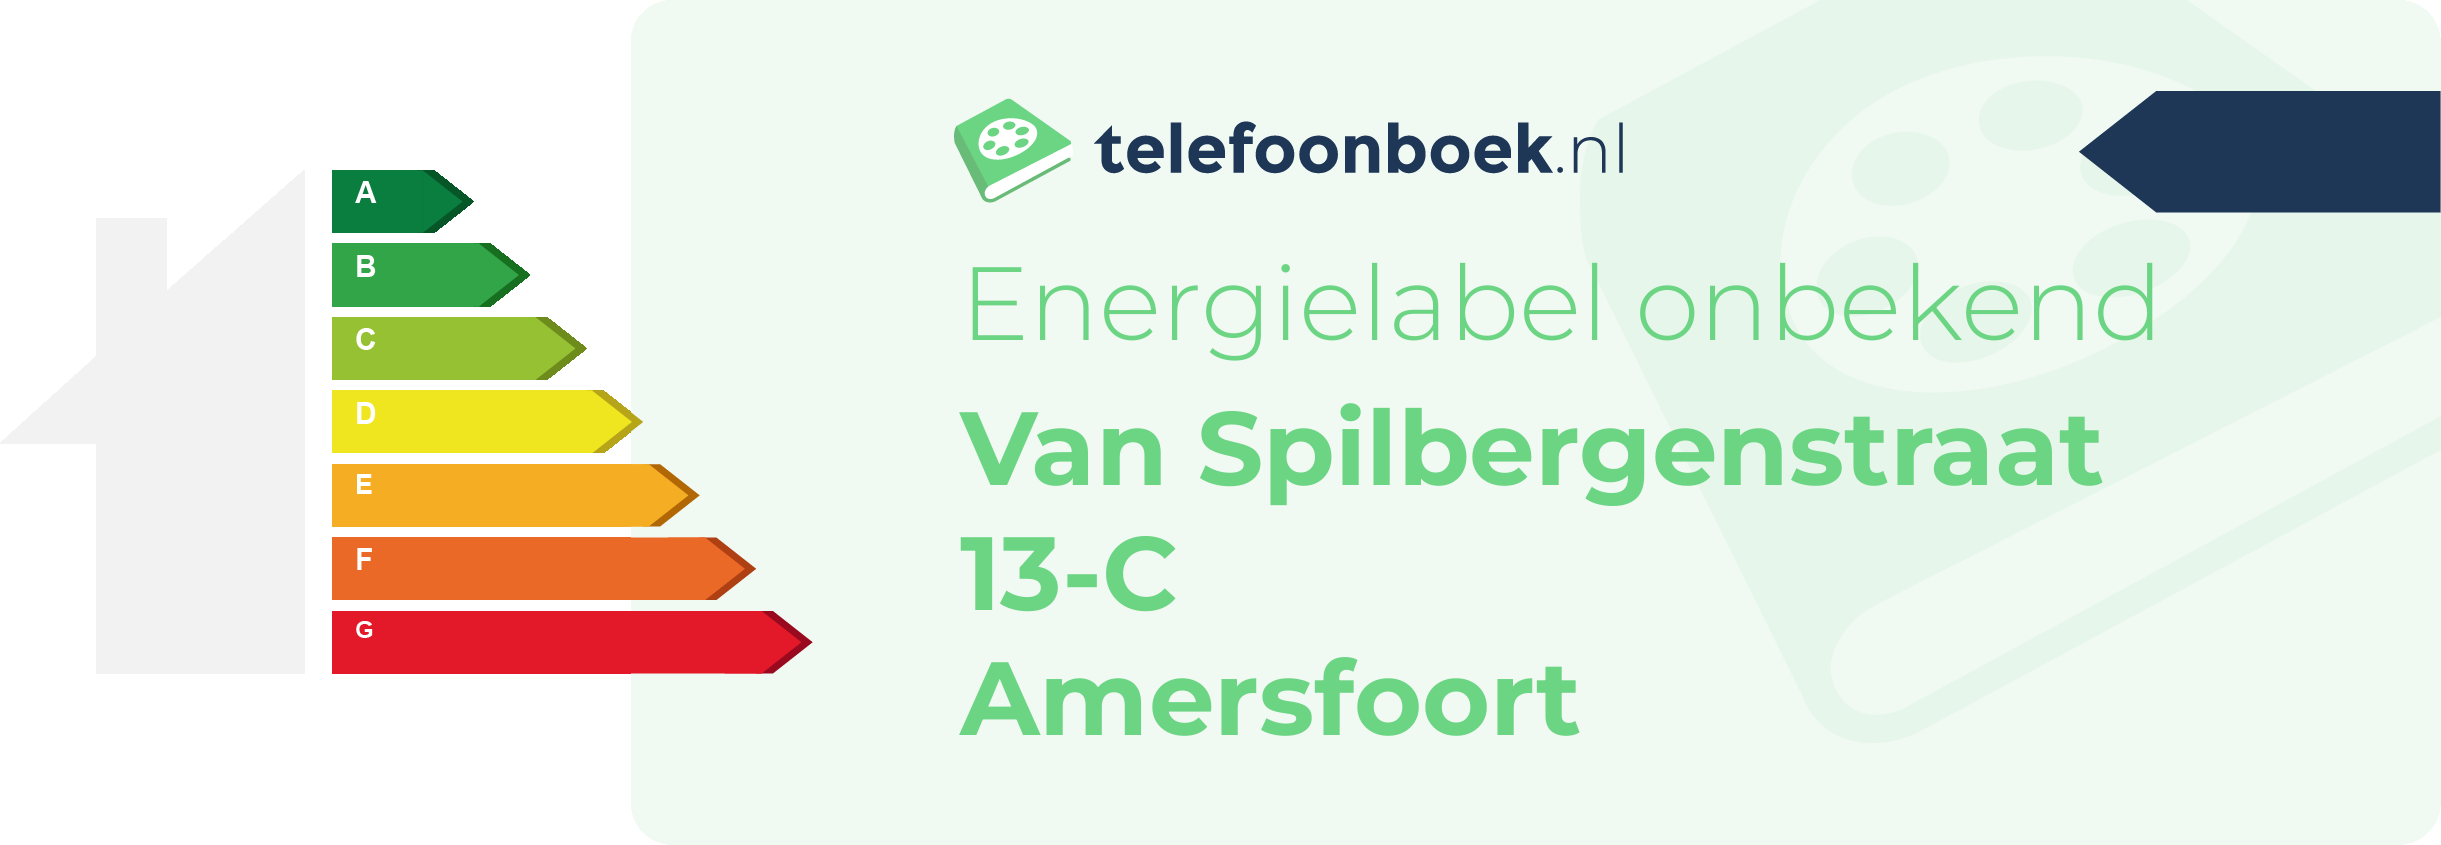 Energielabel Van Spilbergenstraat 13-C Amersfoort